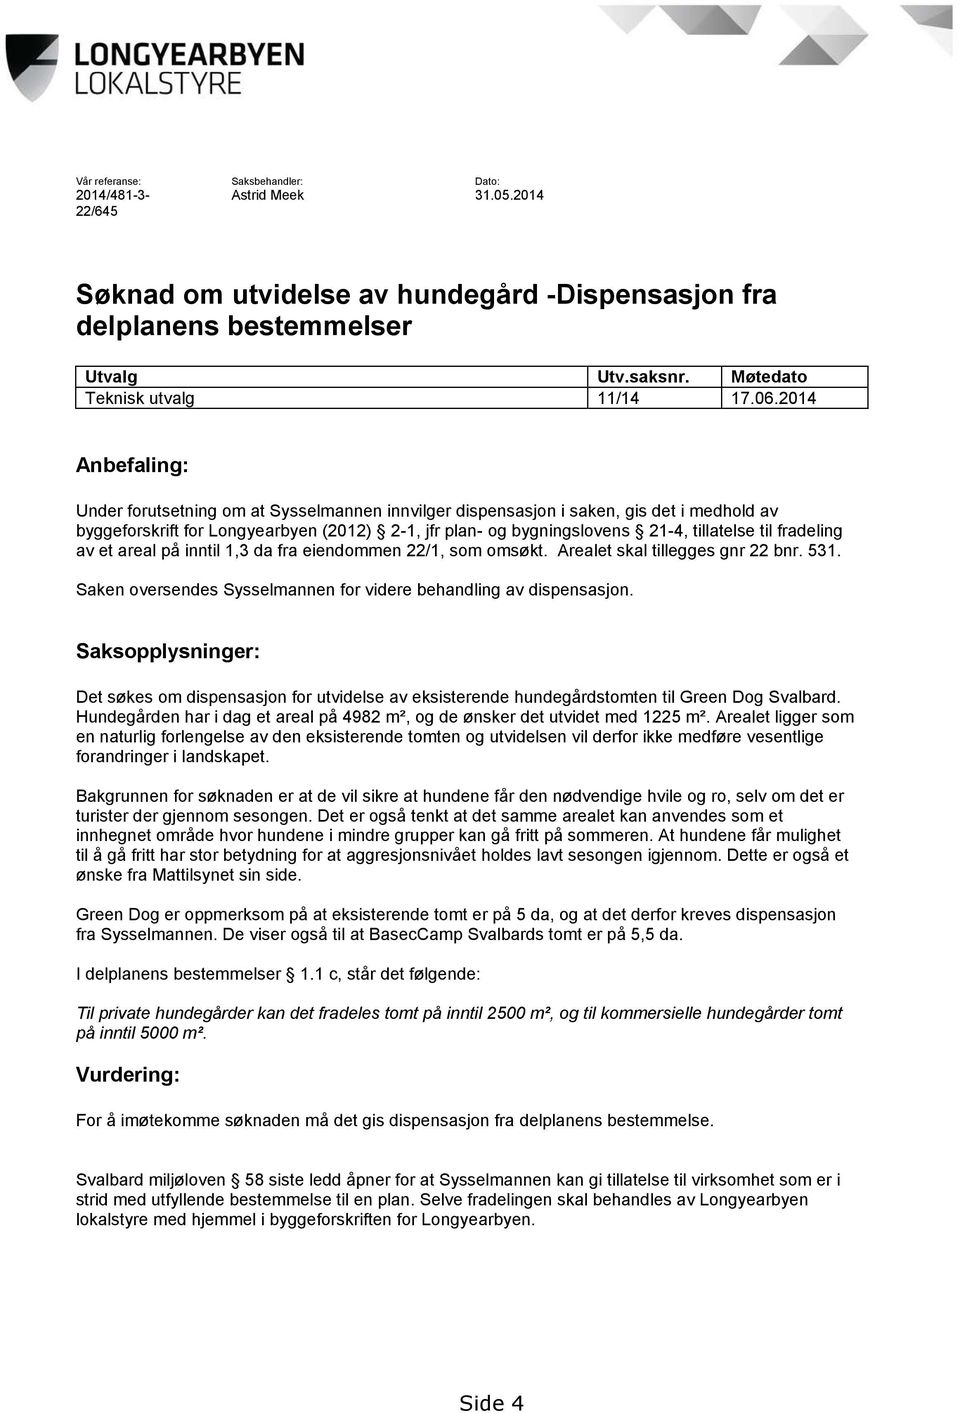 2014 Anbefaling: Under forutsetning om at Sysselmannen innvilger dispensasjon i saken, gis det i medhold av byggeforskrift for Longyearbyen (2012) 2-1, jfr plan- og bygningslovens 21-4, tillatelse